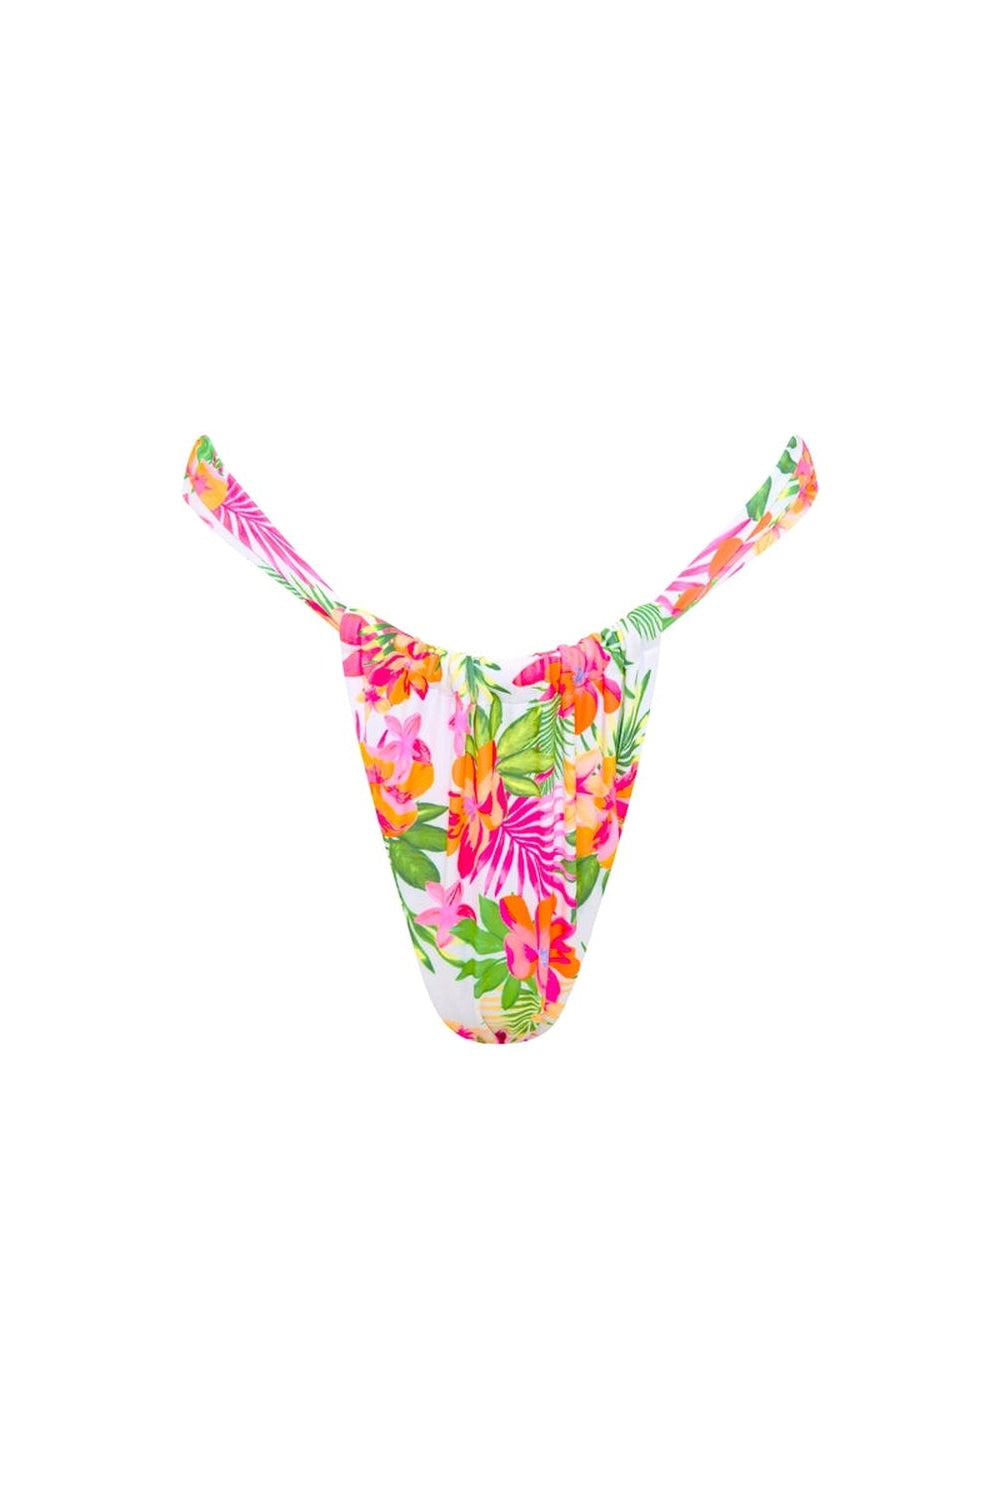 Fashion Bikini Thong Bottom Brazilian V Cheeky Thong Swimwear G-String  Panties